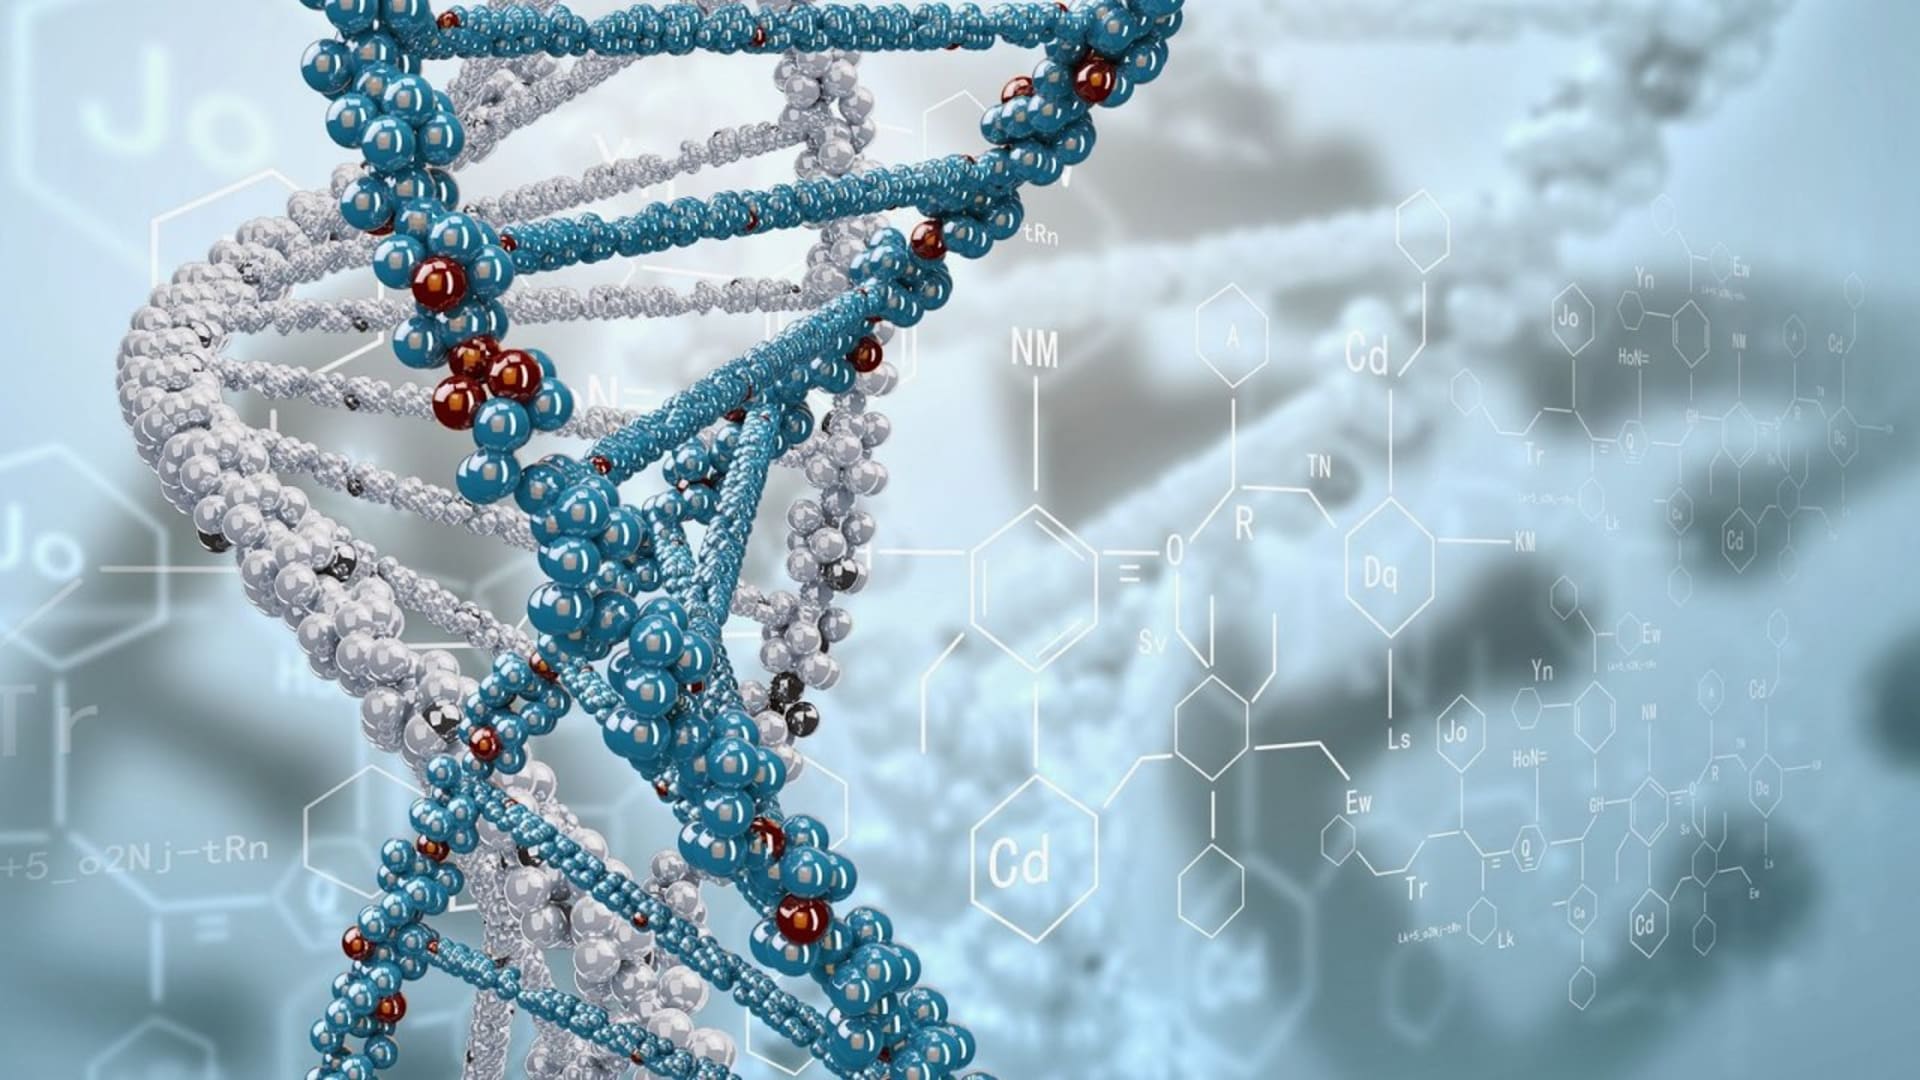 Rozbíjení DNA může pomoc vyřešit celou řadu velkých problémů...